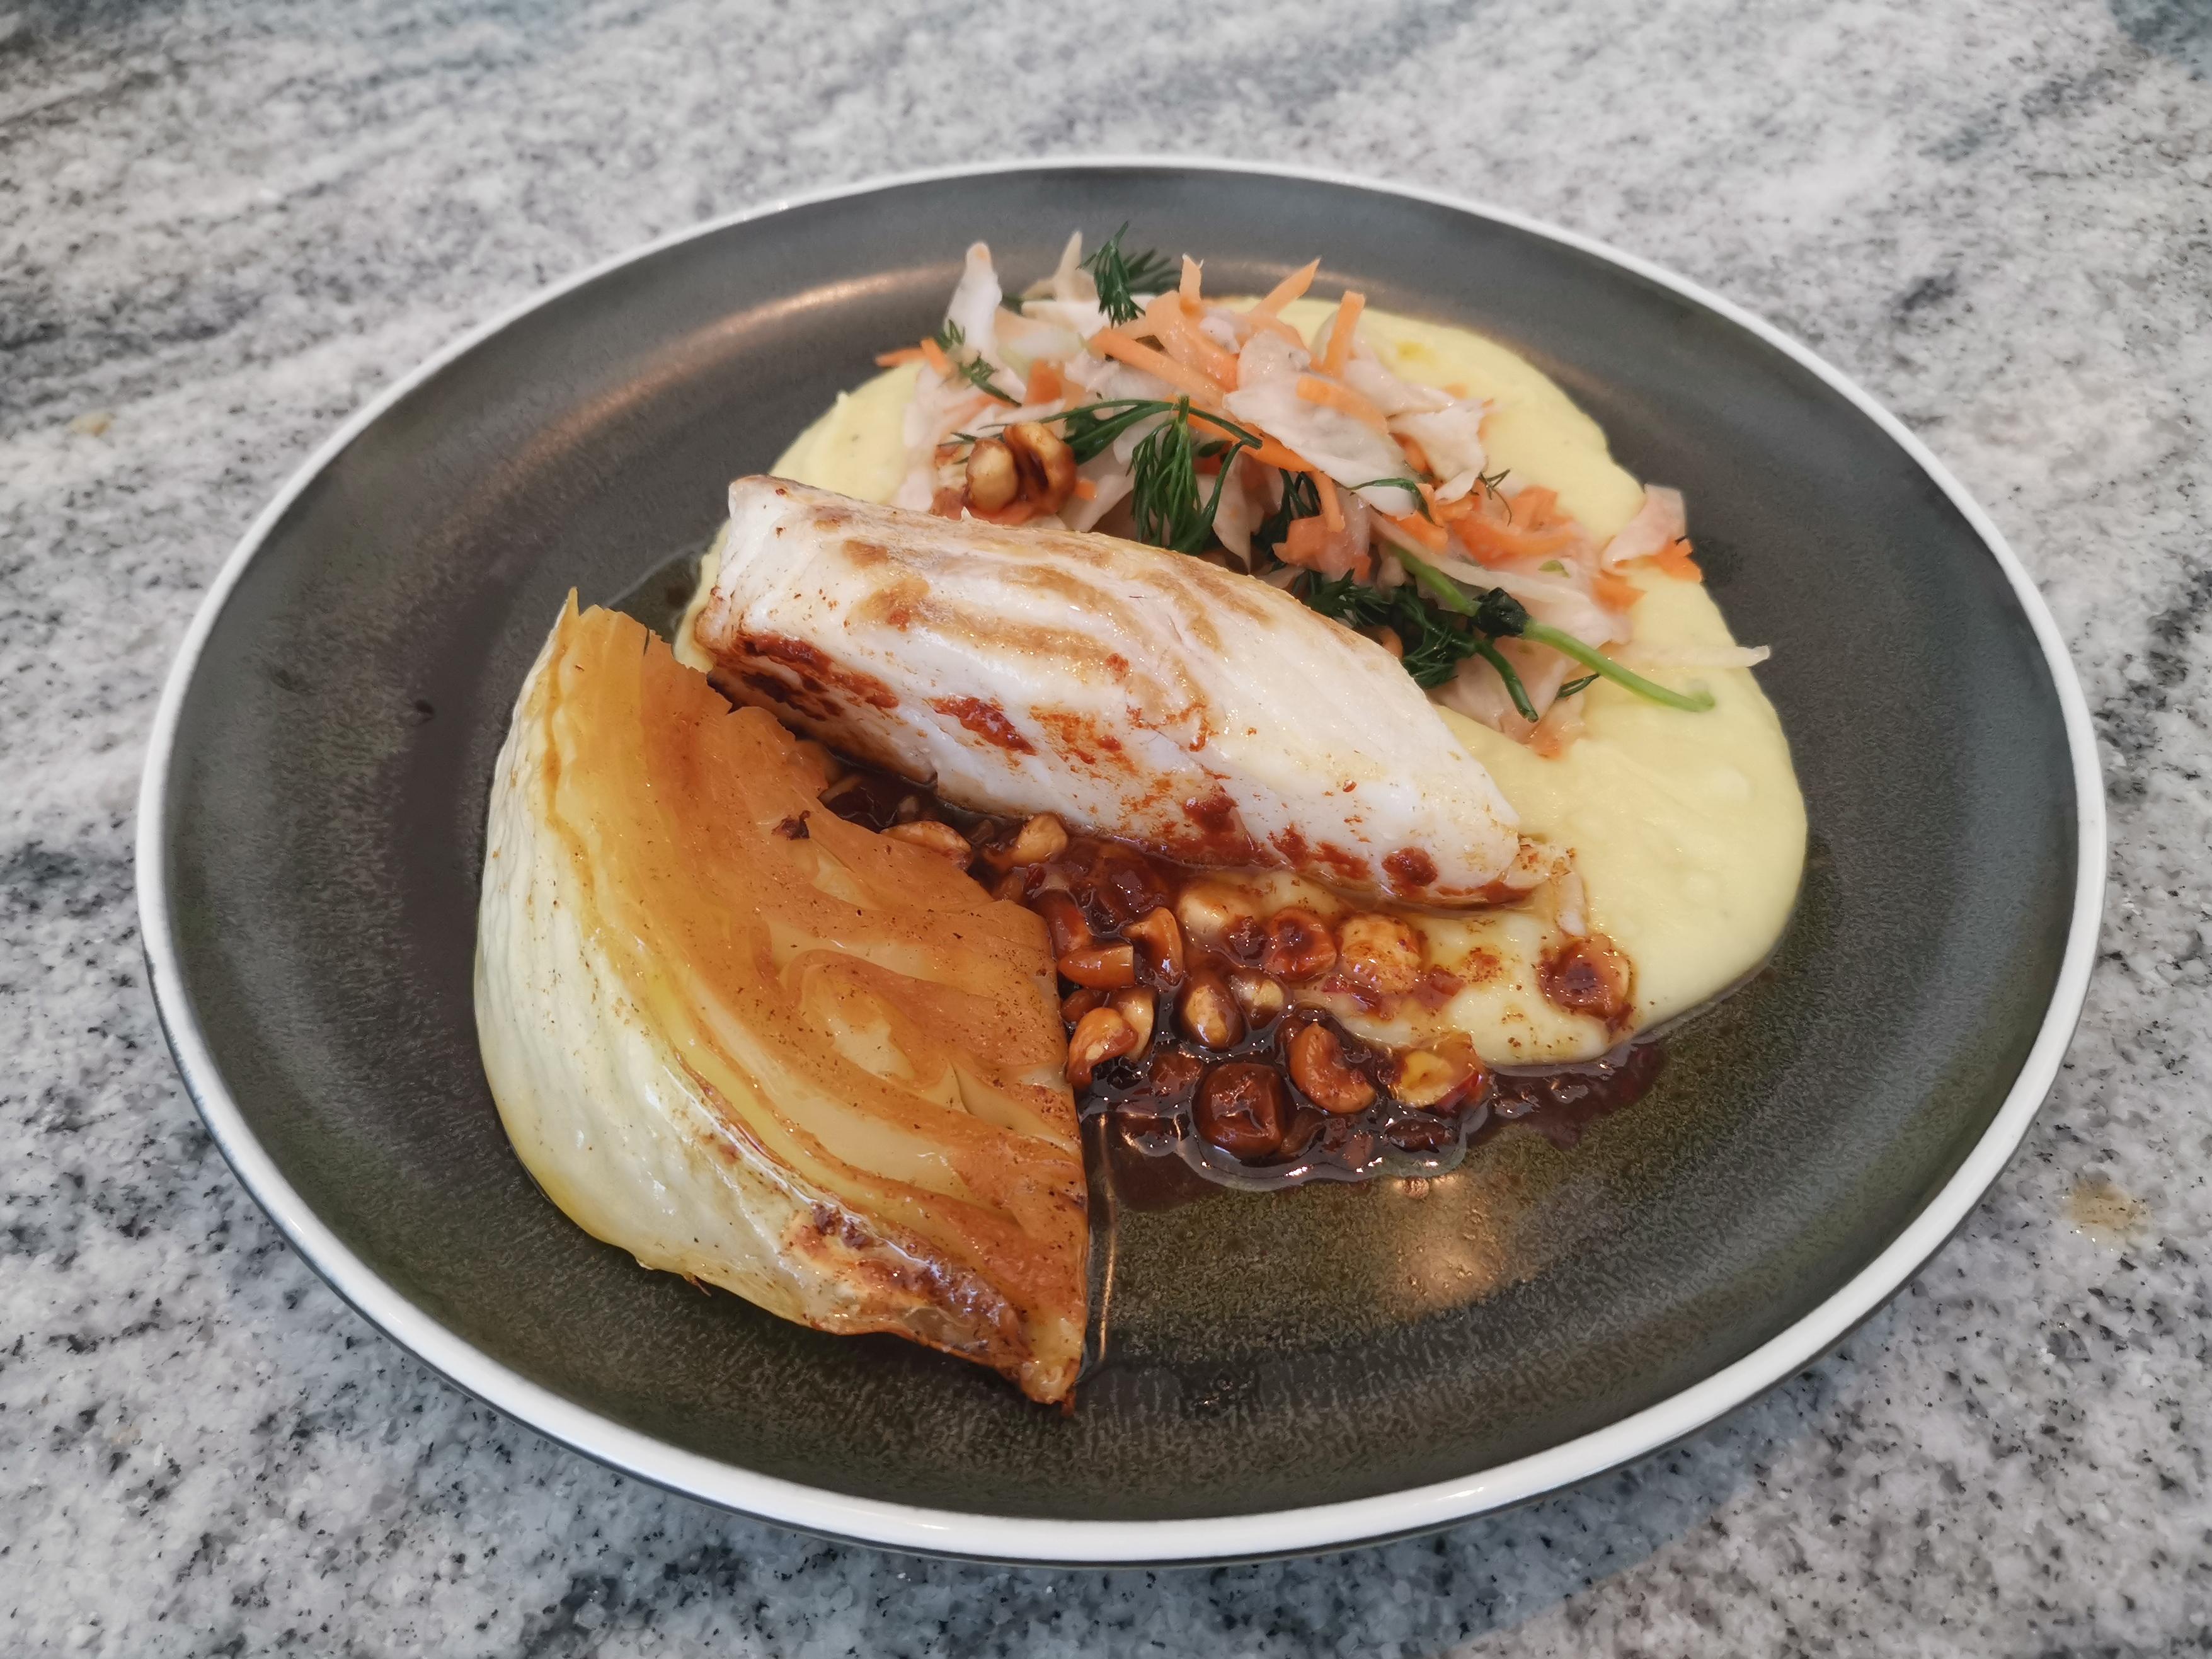 Anmeldelse av matkit fra Holwech: Finfin fisk i flott eske